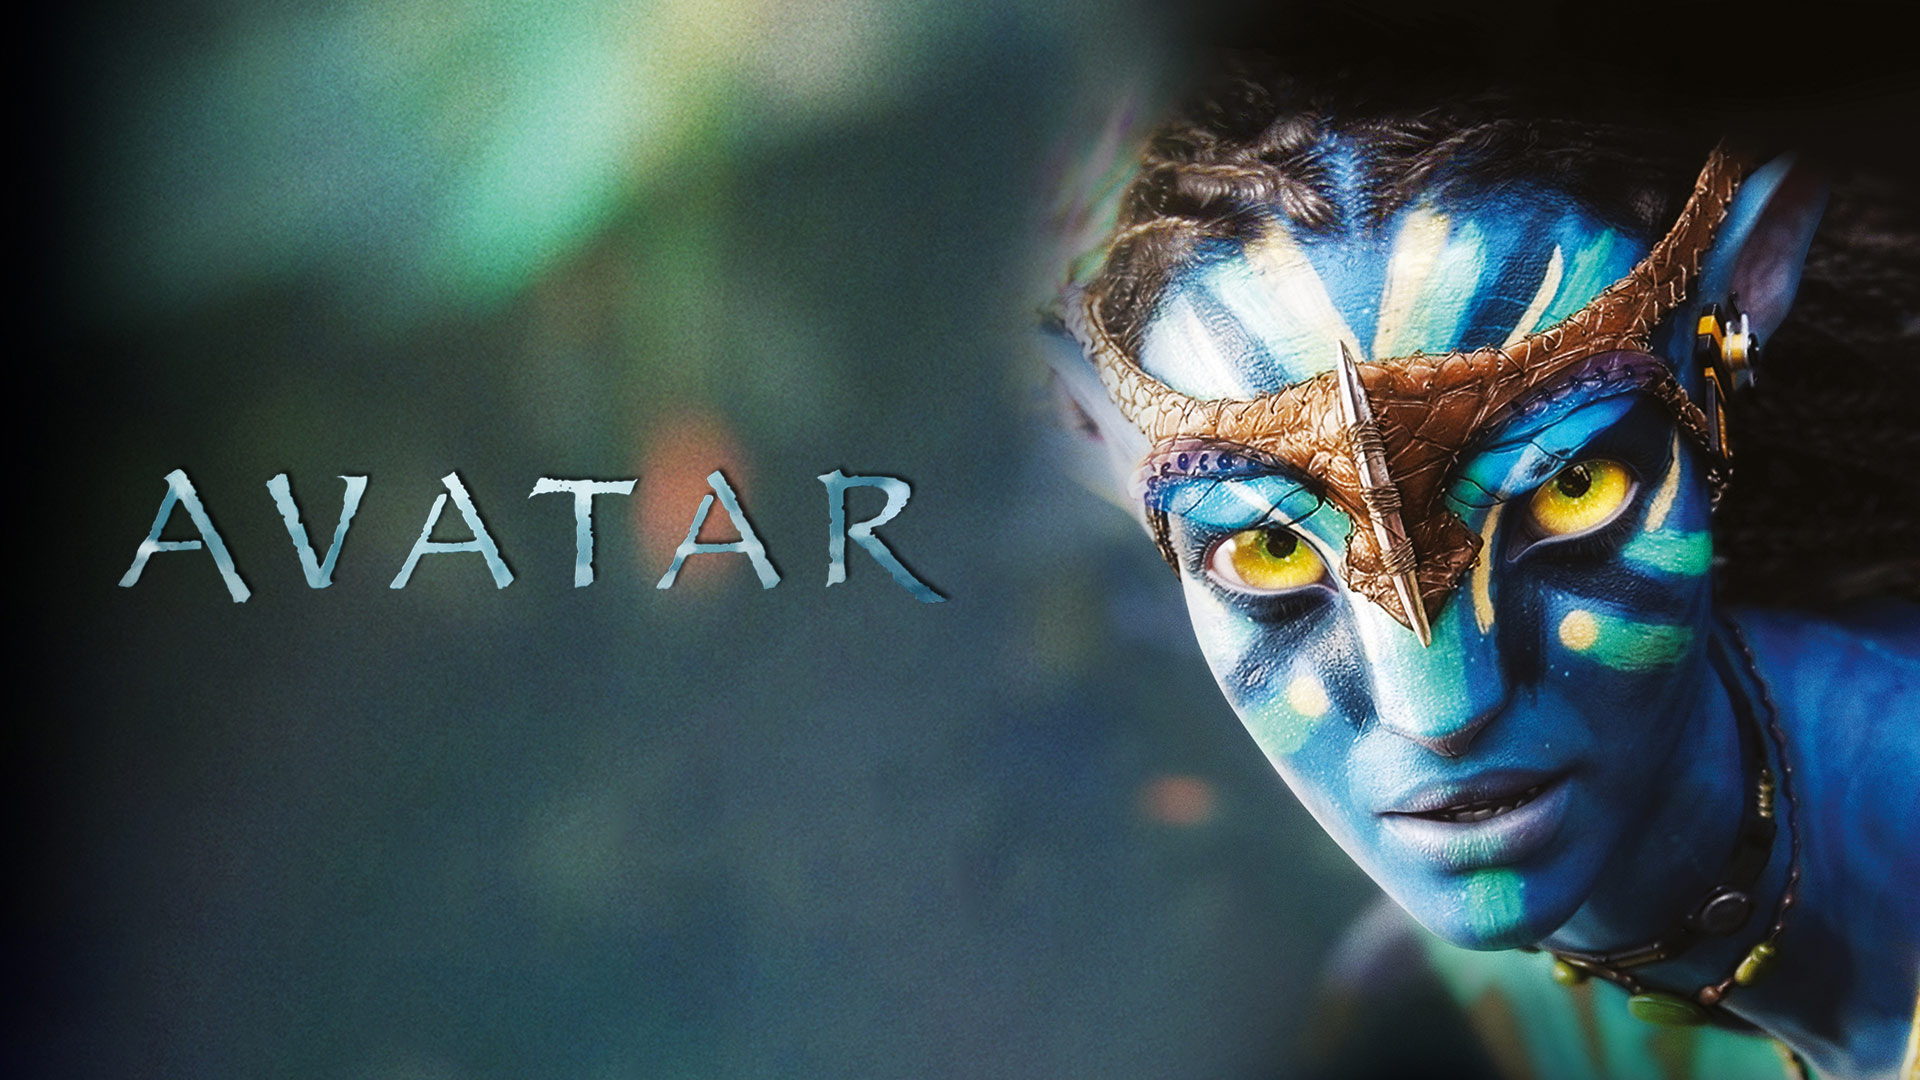 ด อวตาร 2 Avatar 2 เตมเรองอนไลน FULL HD 1080p ซบไทย  Cổng Mua Bán